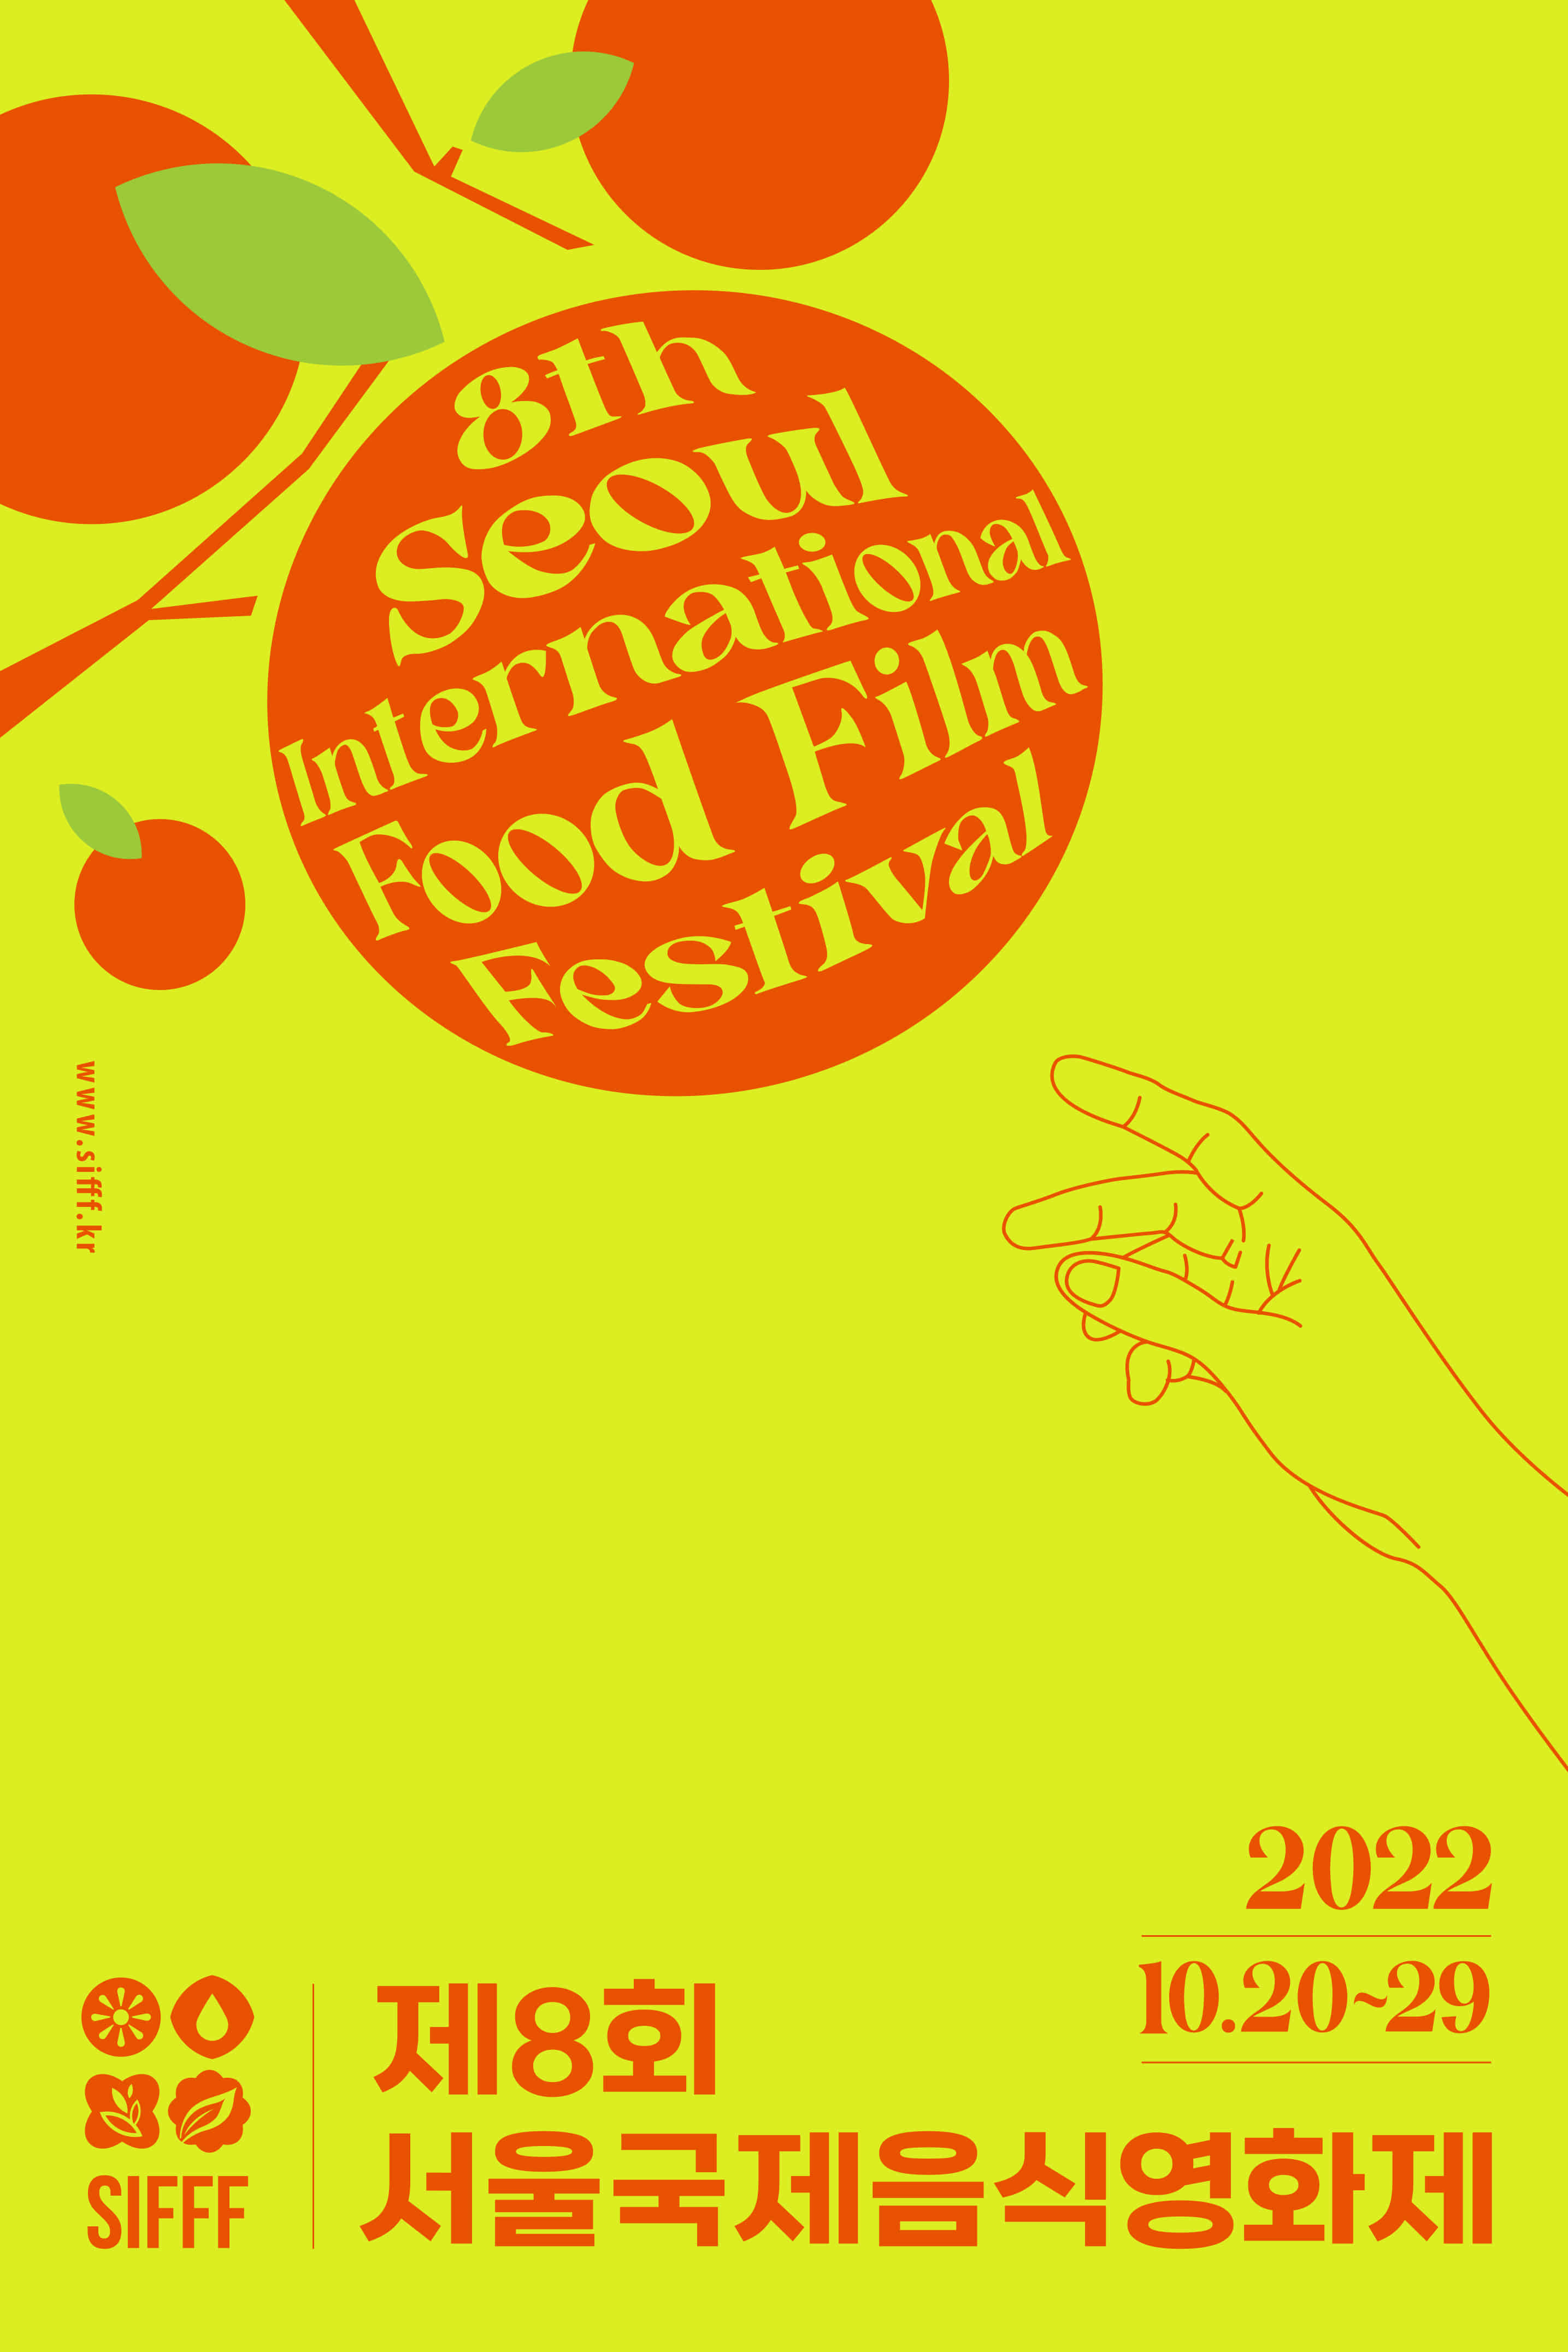 서울국제영화제 공식 포스터